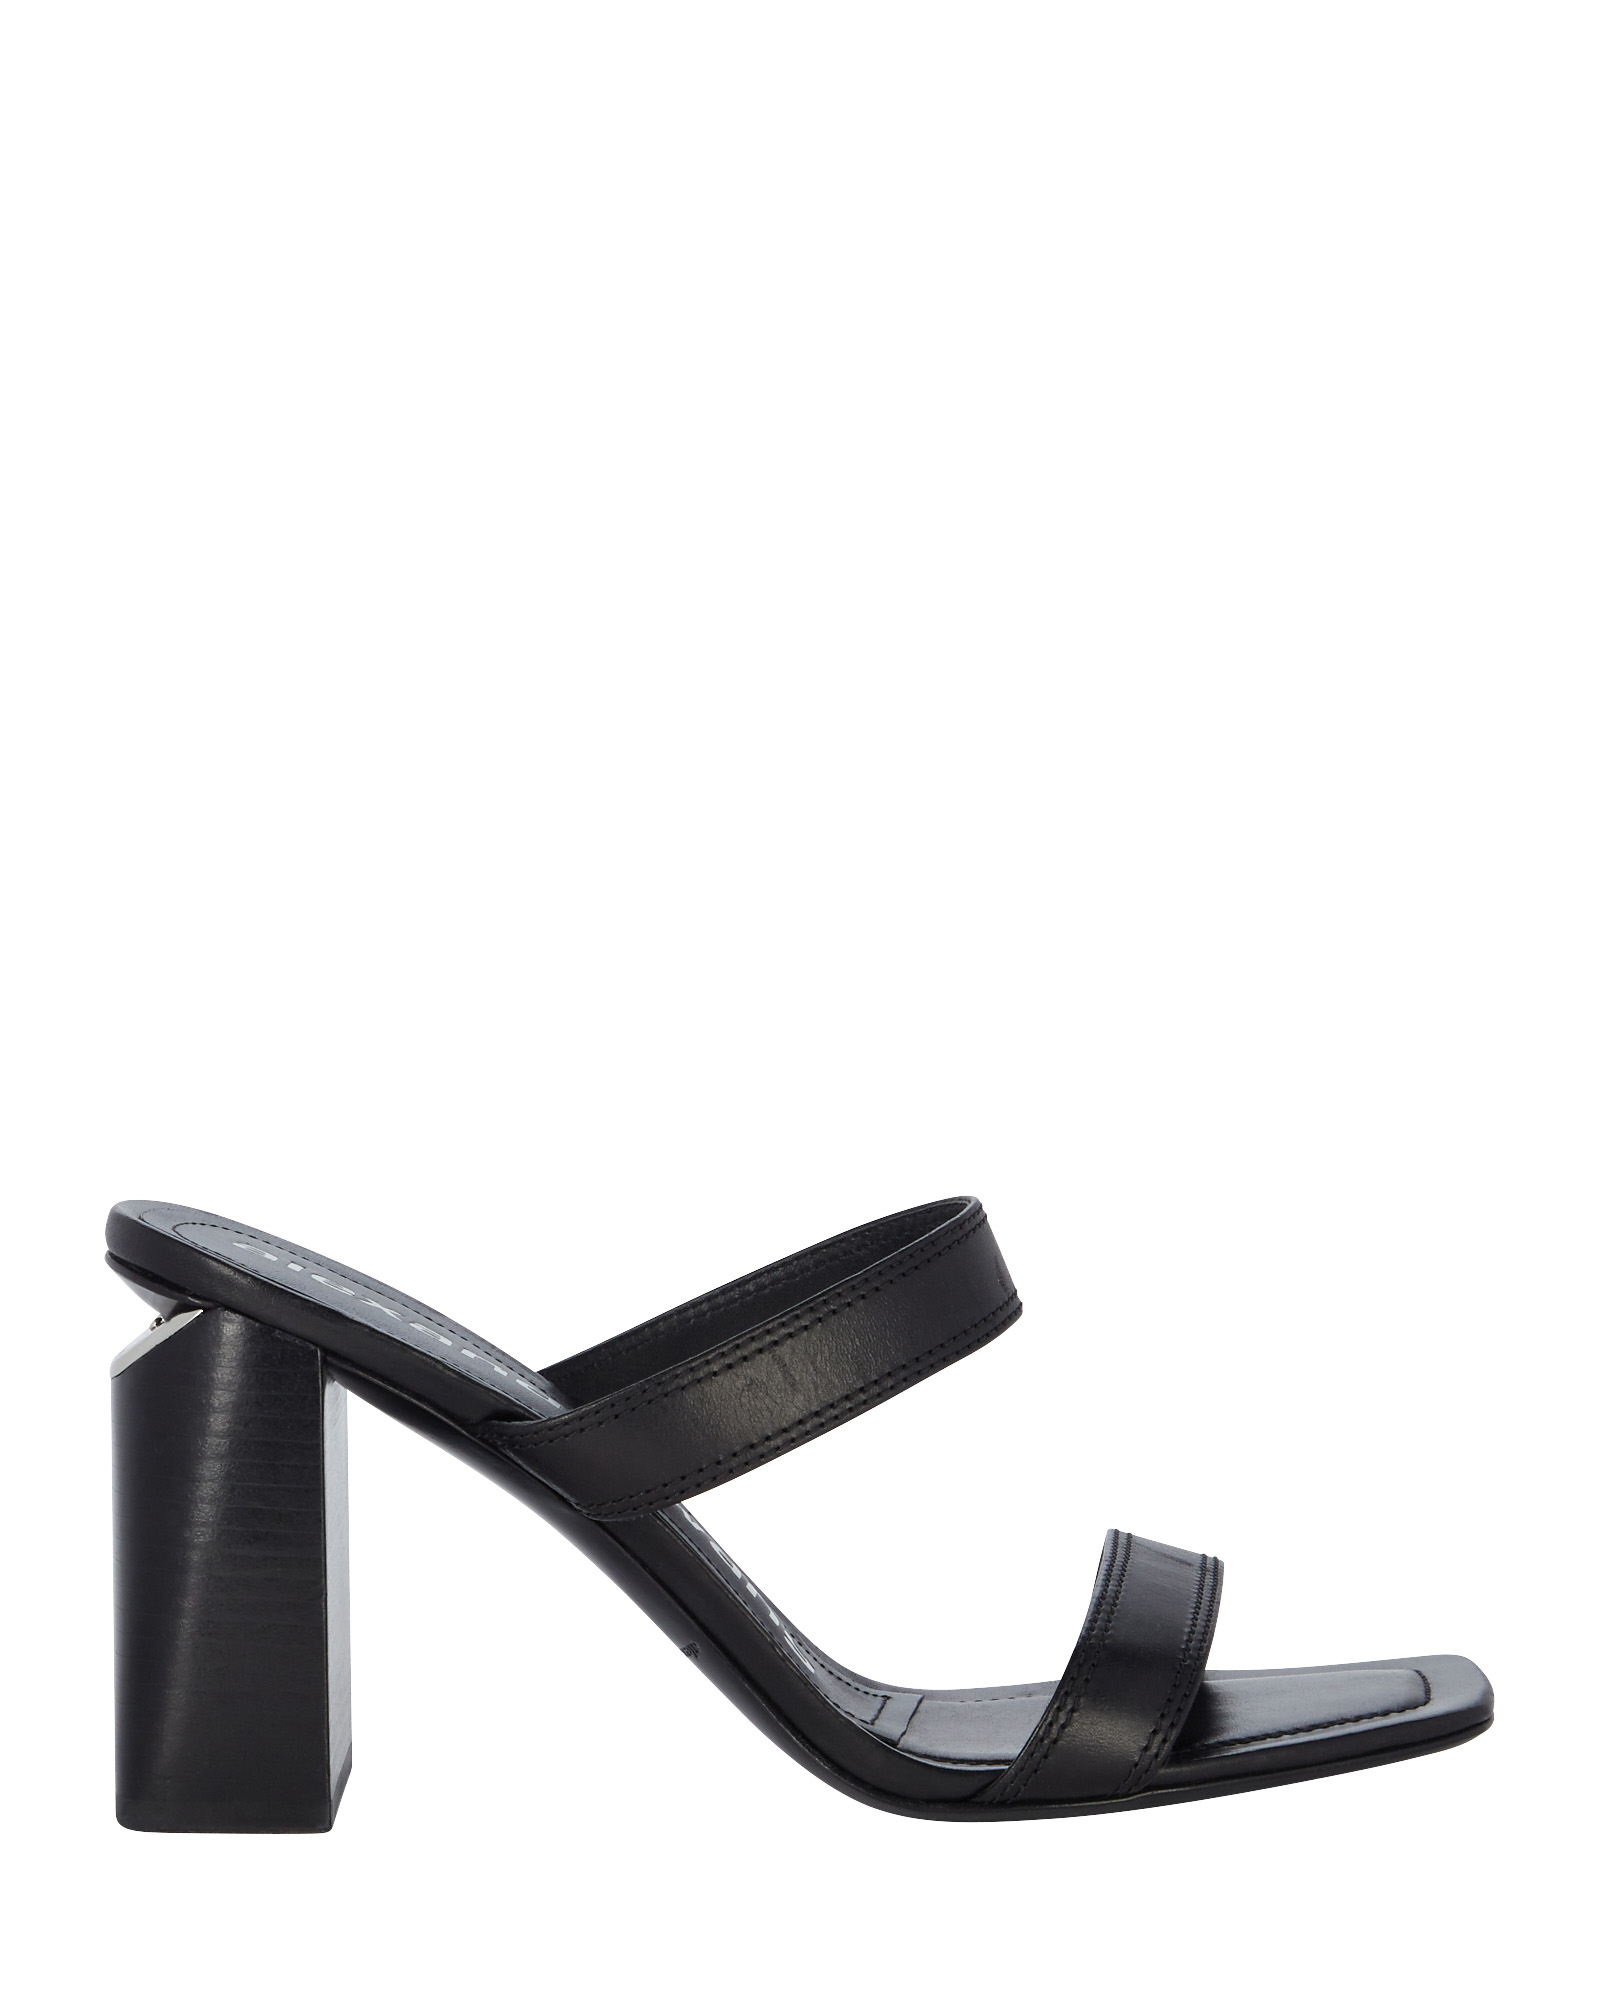 Alexander Wang Hayden Slide Sandals | INTERMIX®